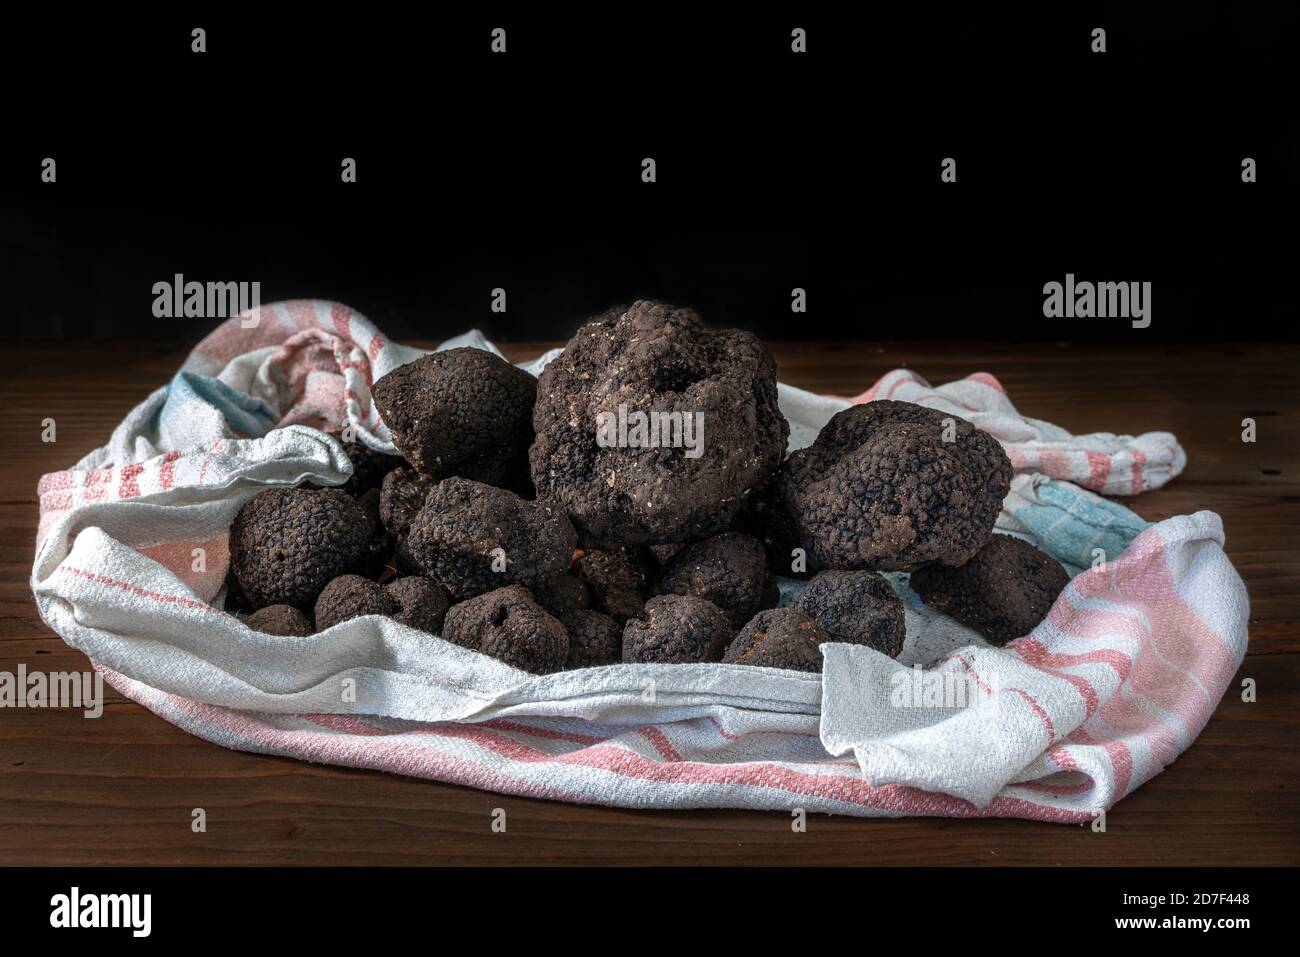 Truffes noires avec des traces de terre encore conservées dans un tissu placé sur une table sur un fond noir.Abruzzes, Italie, Europe Banque D'Images